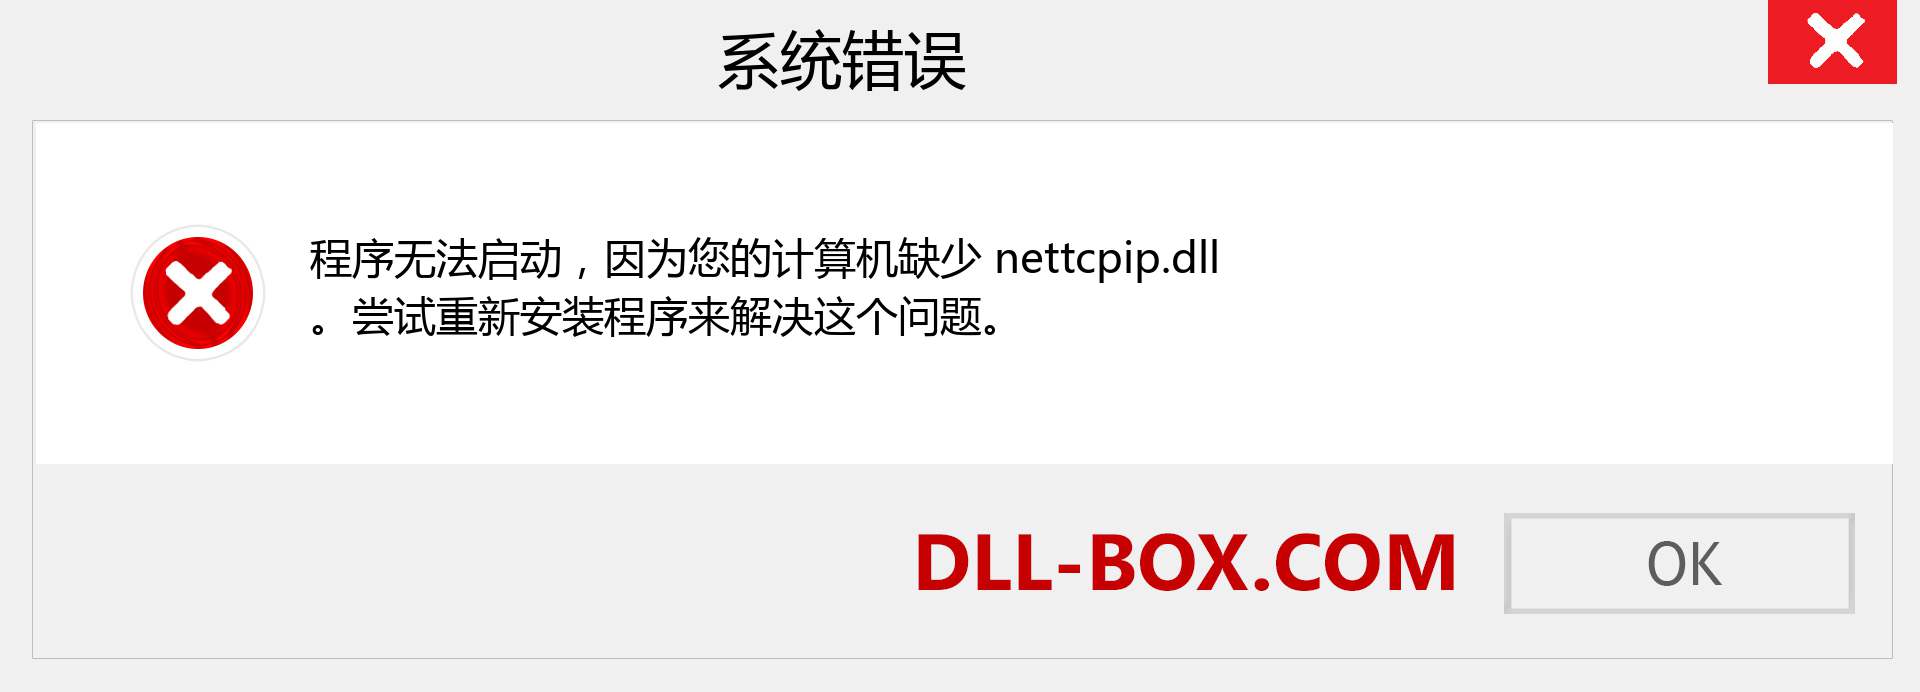 nettcpip.dll 文件丢失？。 适用于 Windows 7、8、10 的下载 - 修复 Windows、照片、图像上的 nettcpip dll 丢失错误